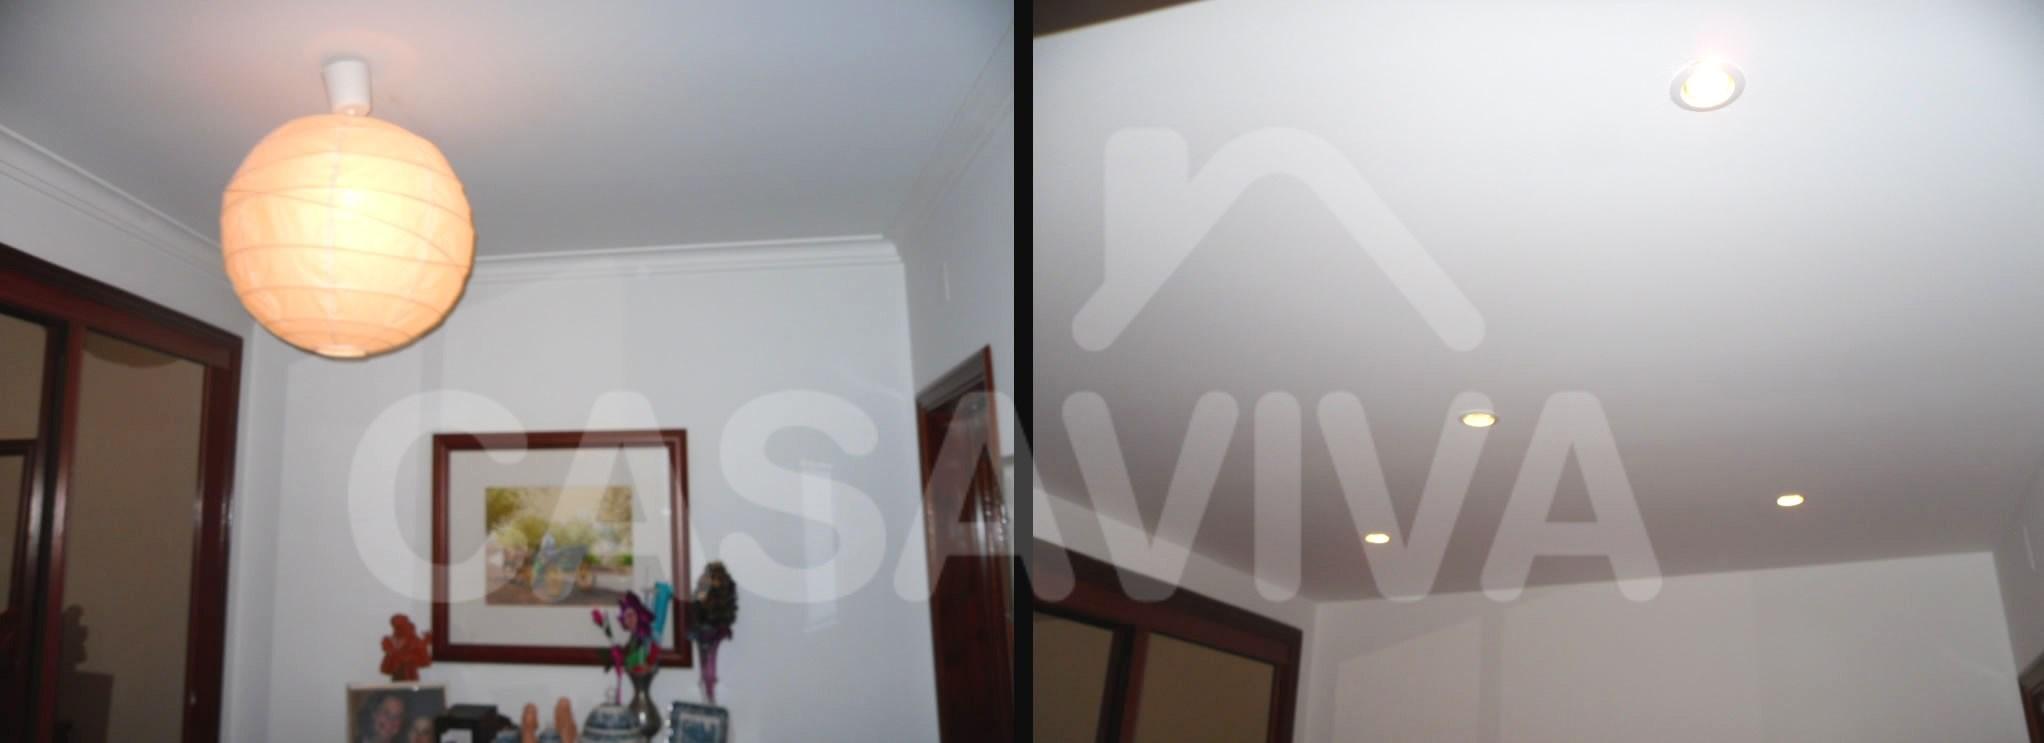 Colocação de tecto falso no hall do apartamento.Pintura completa de paredes.Focos de luz embutidos.